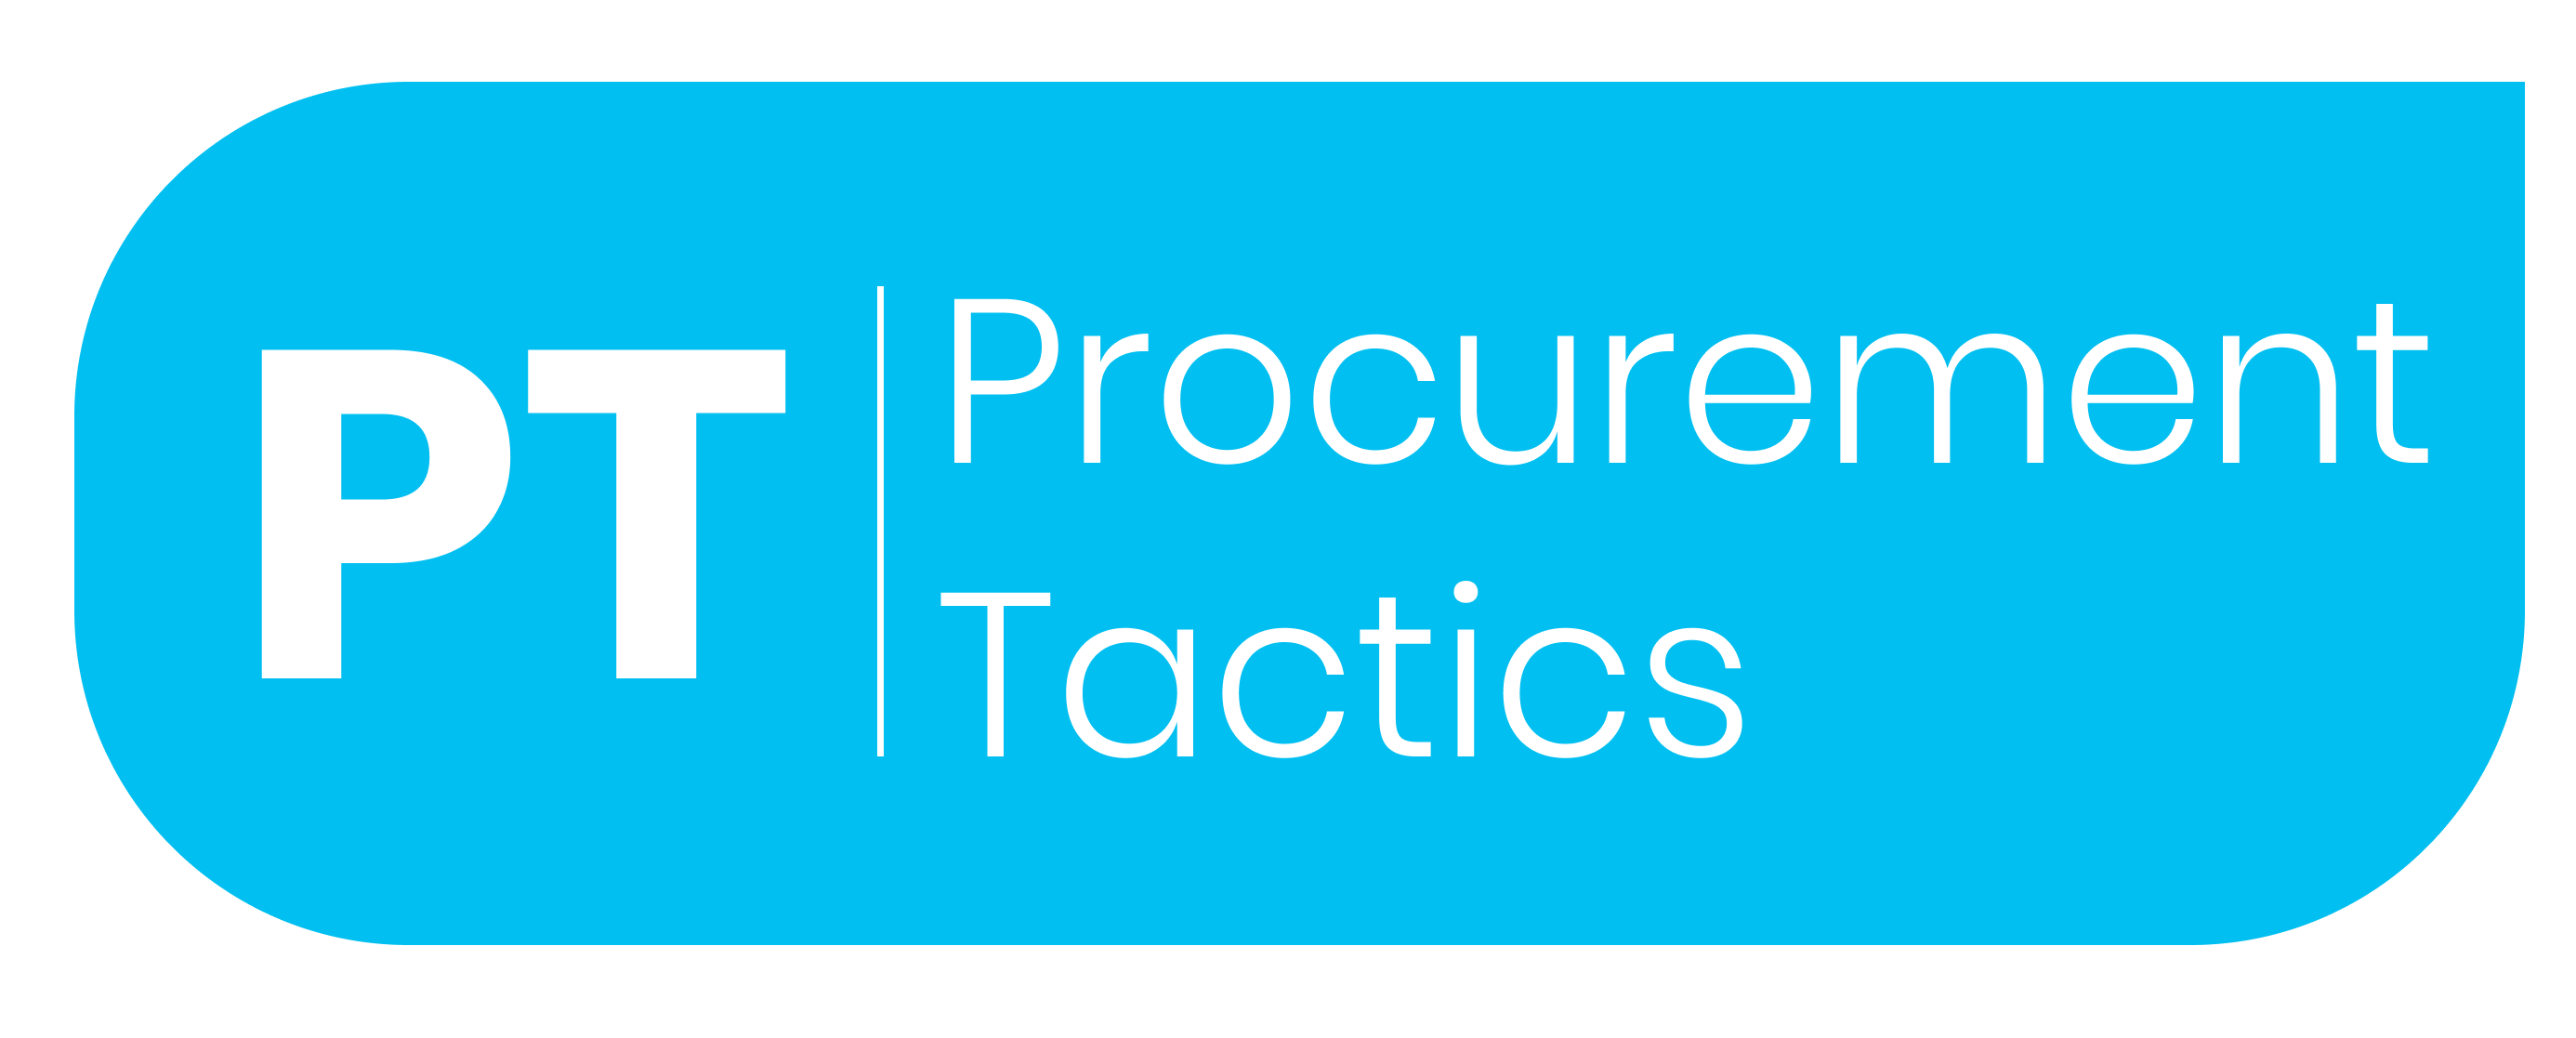 Procurement Tactics Logo